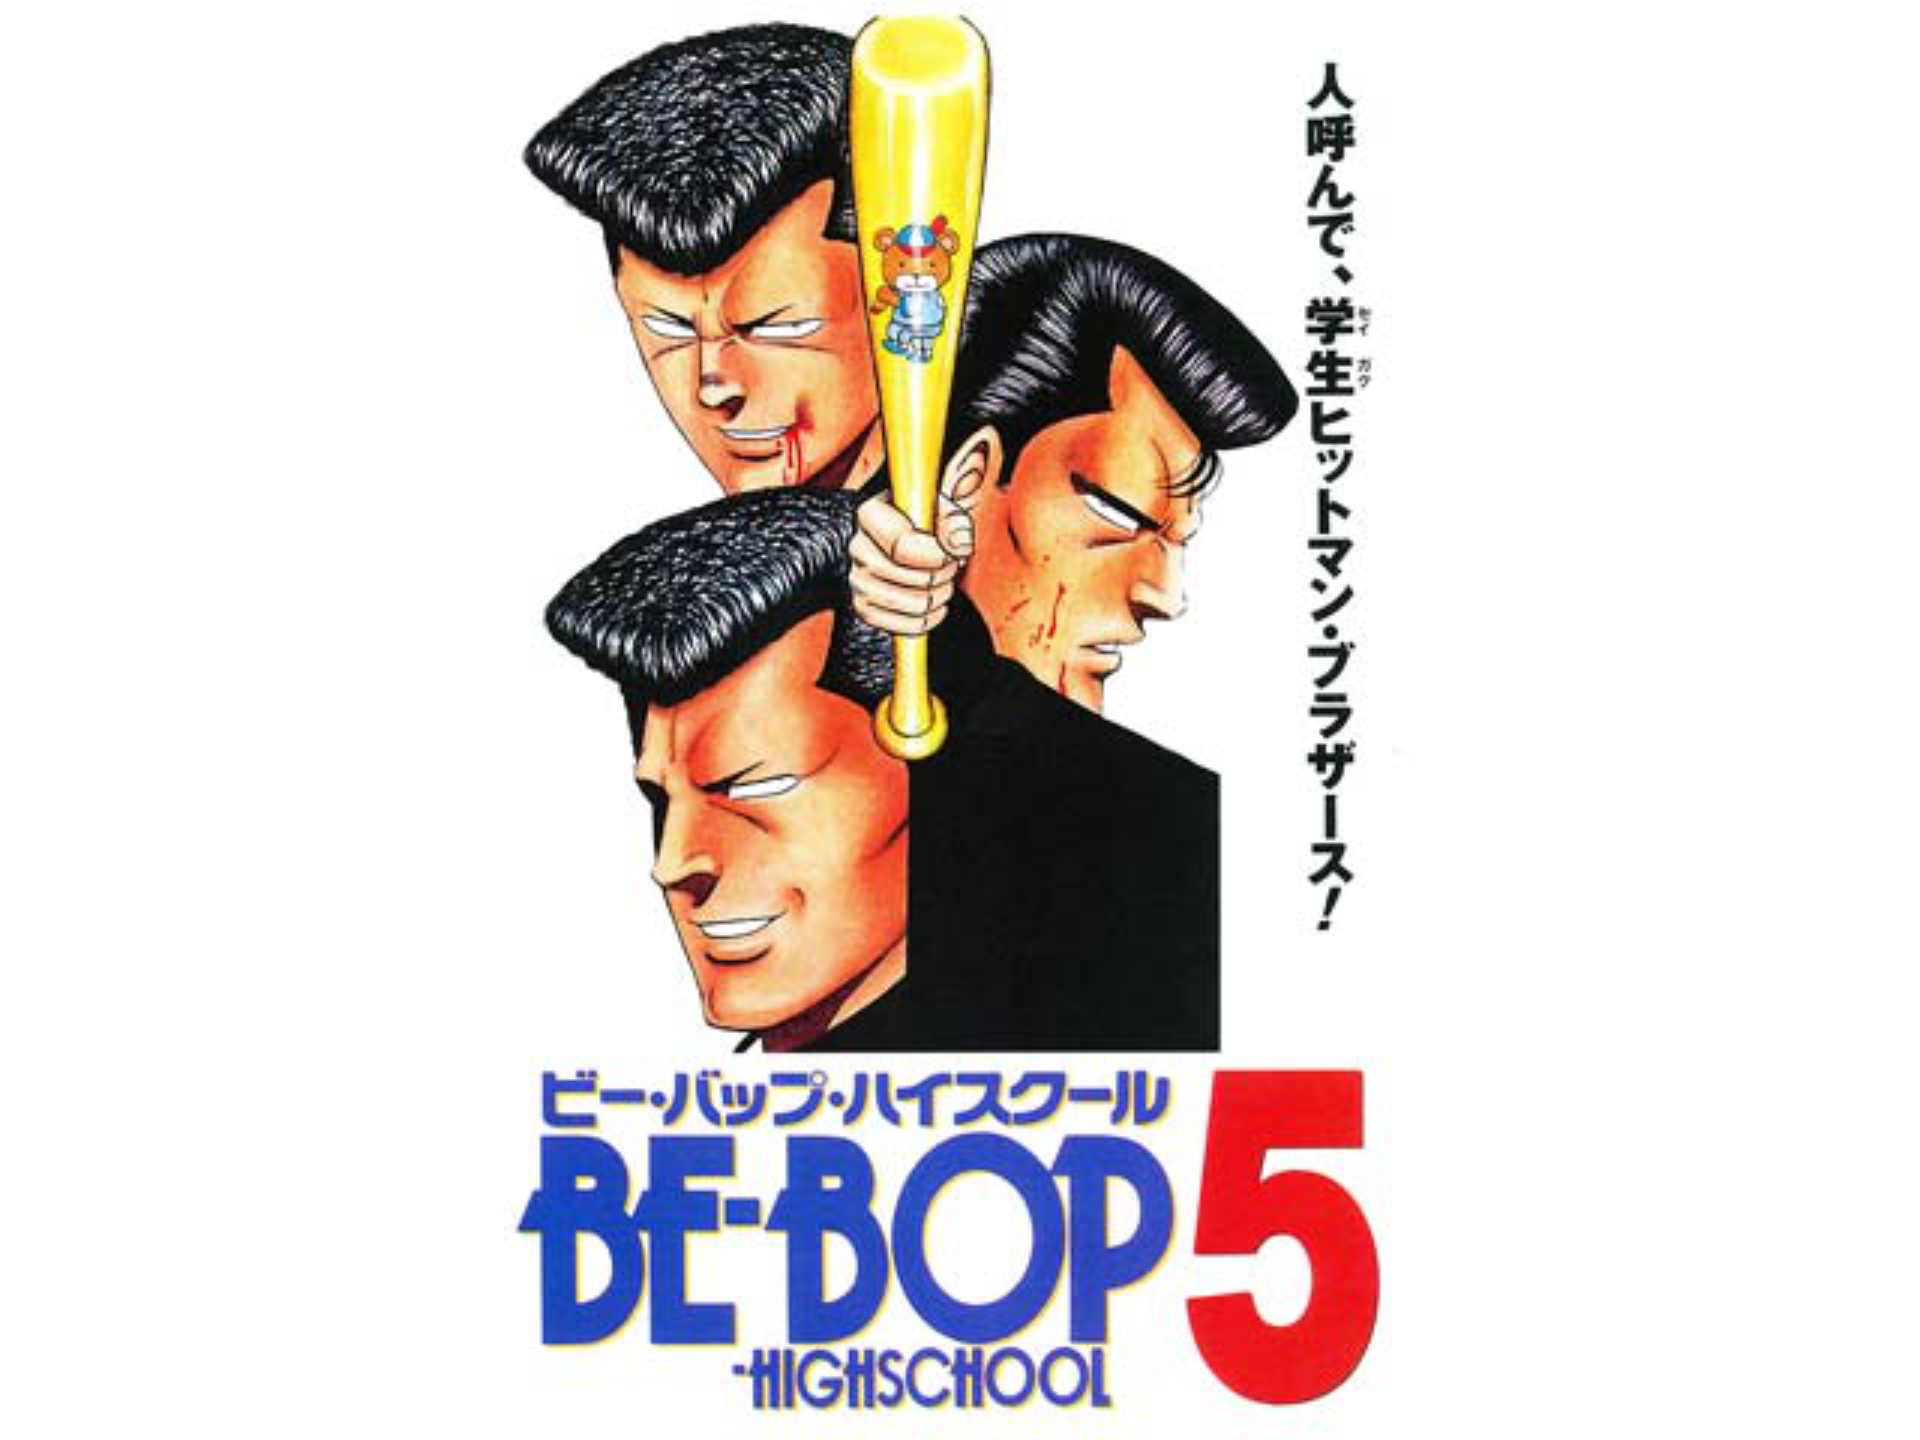 アニメ Be Bop Highschool ビー バップ ハイスクール 5 の動画 初月無料 動画配信サービスのビデオマーケット